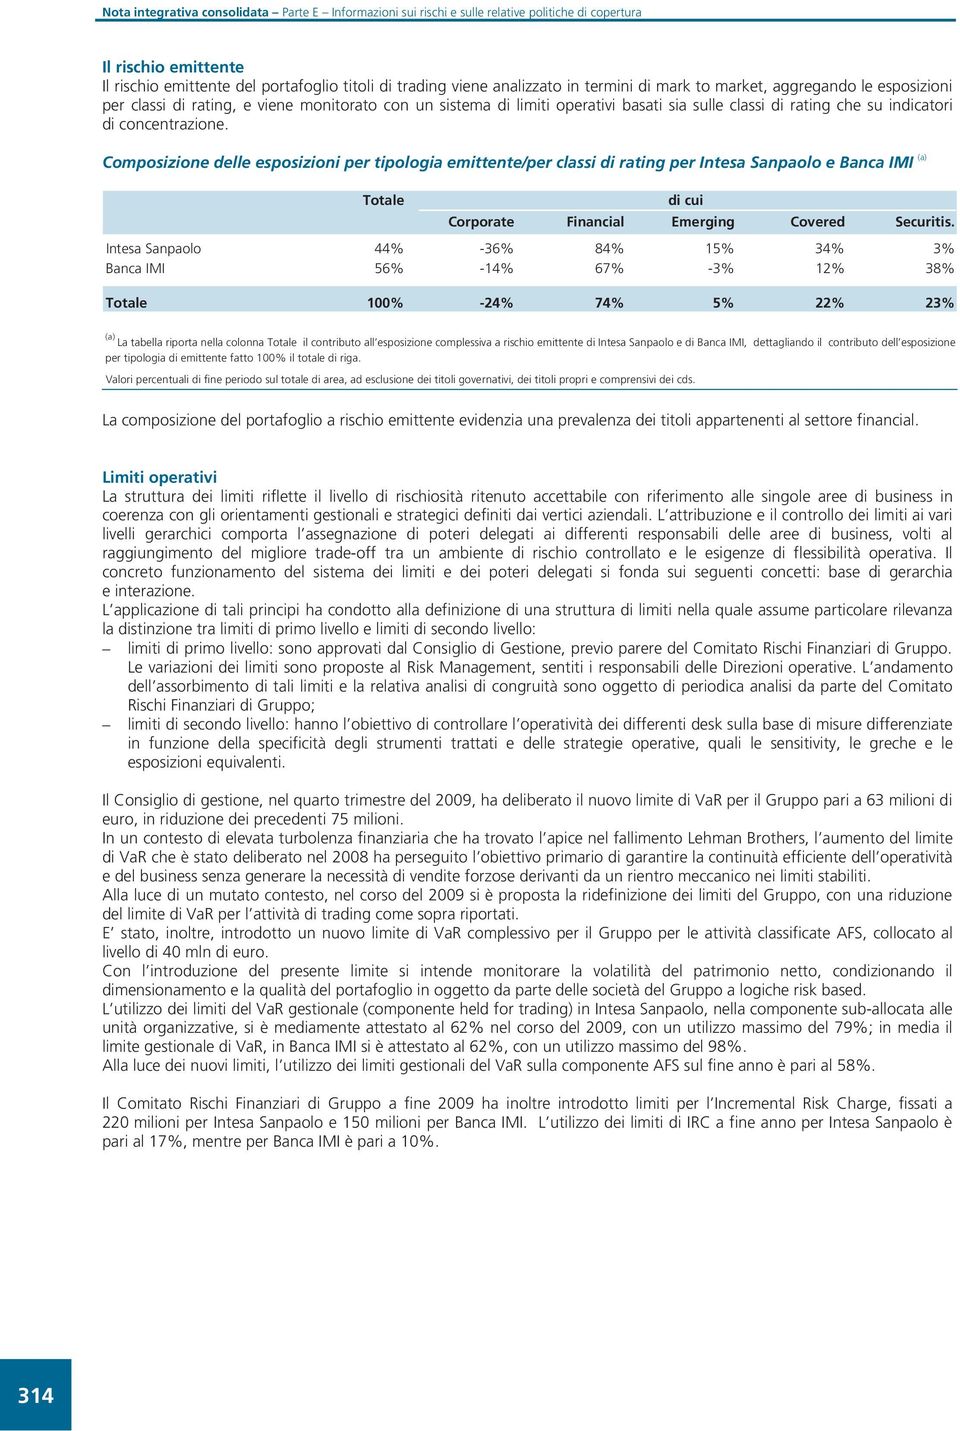 Composizione delle esposizioni per tipologia emittente/per classi di rating per Intesa Sanpaolo e Banca IMI (a) Totale di cui Corporate Financial Emerging Covered Securitis.